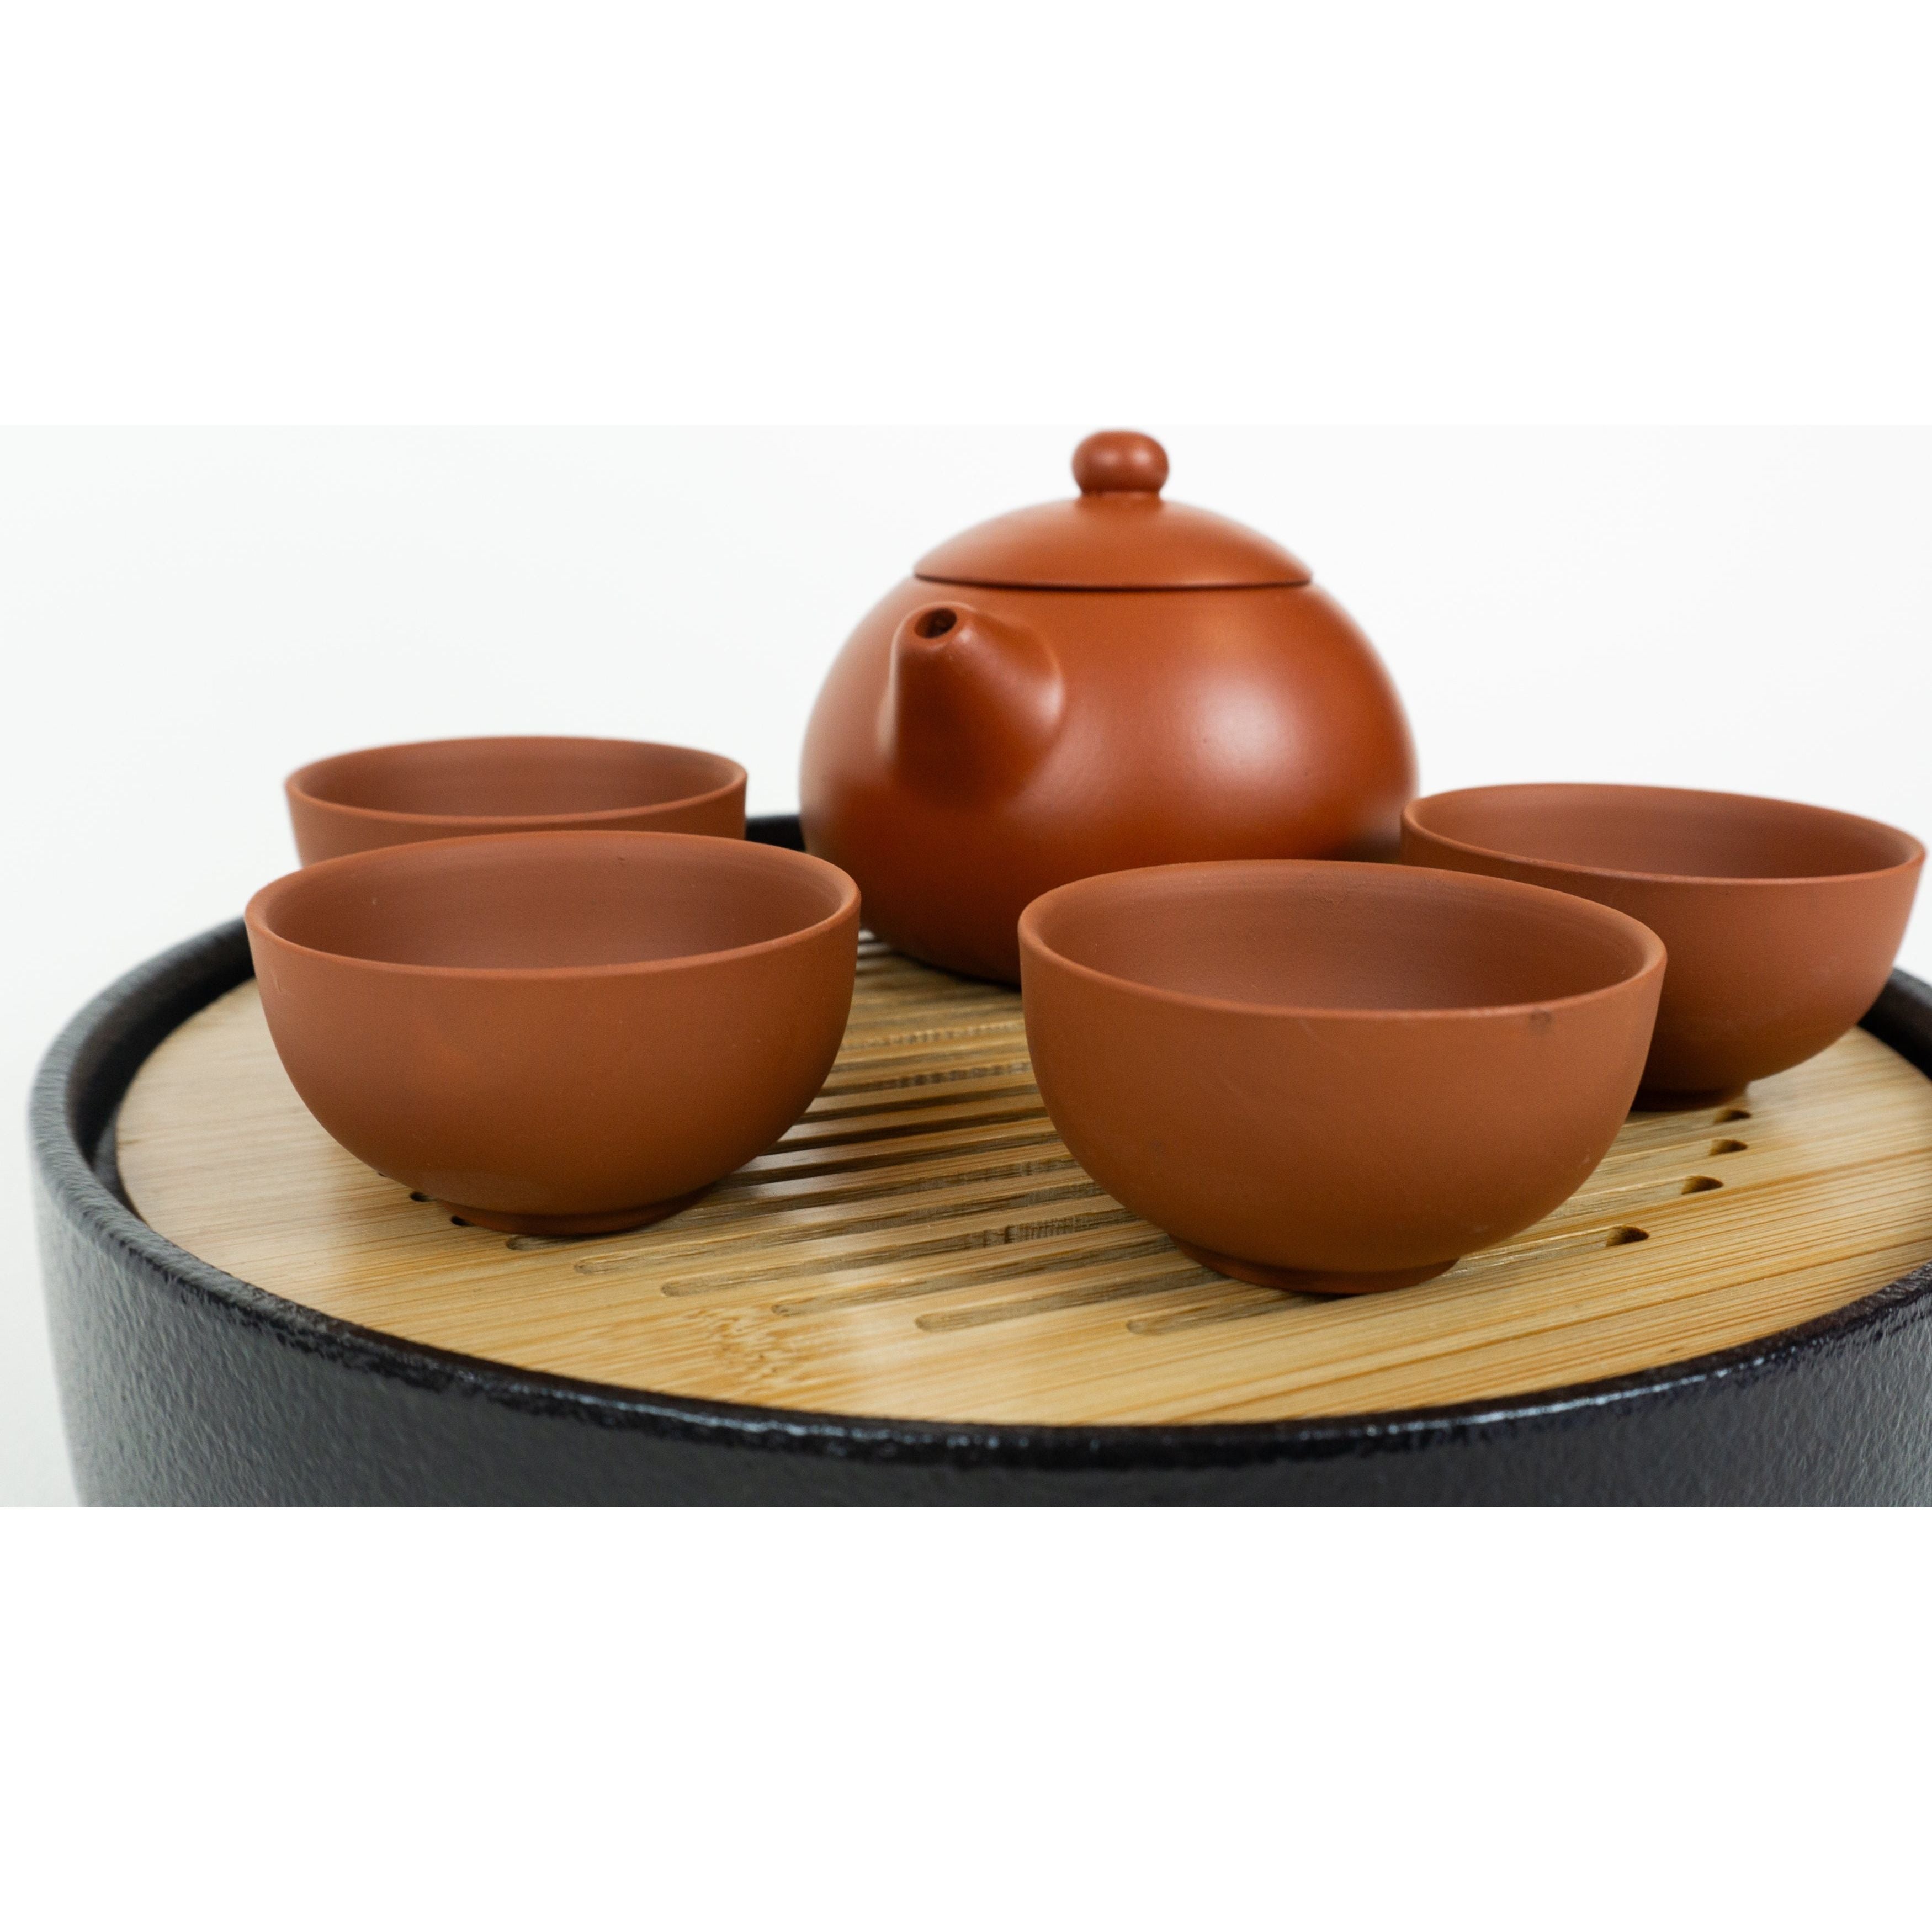 Juego de ceremonia del té, tetera Yixing con tapa abovedada de color marrón rojizo, 4 tazas